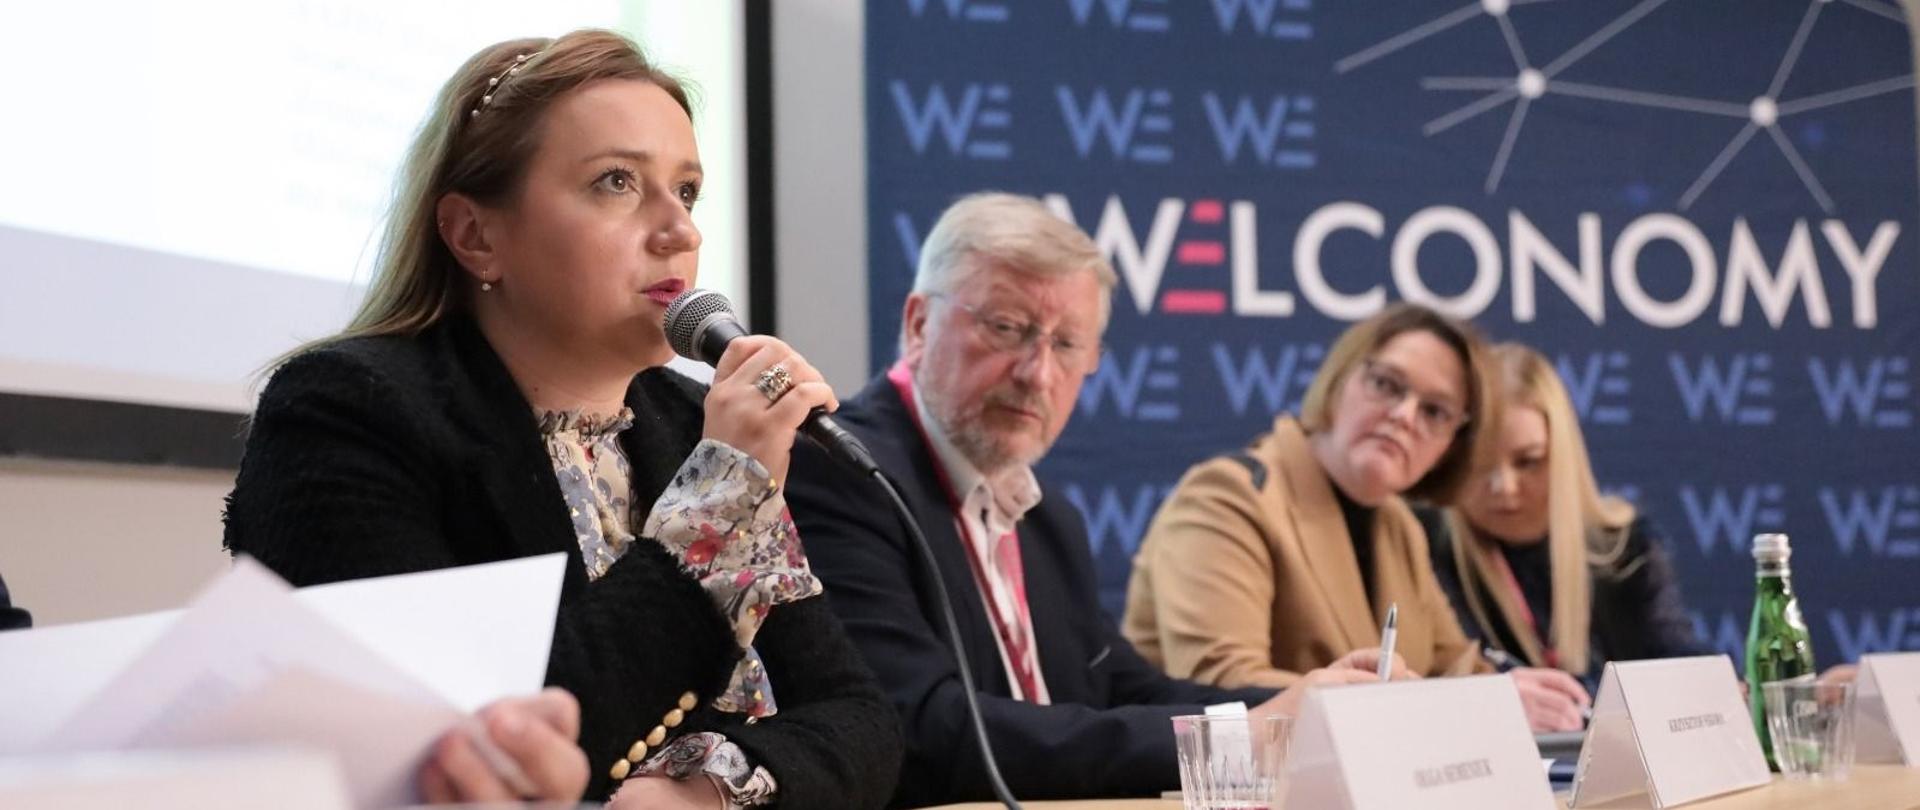 Wiceminister Olga Semeniuk podczas Welconomy Forum in Toruń. Na zdjęciu widać minister, która zabiera głos i pozostałych panelistów. Uczestniczy siedzą przy stole.